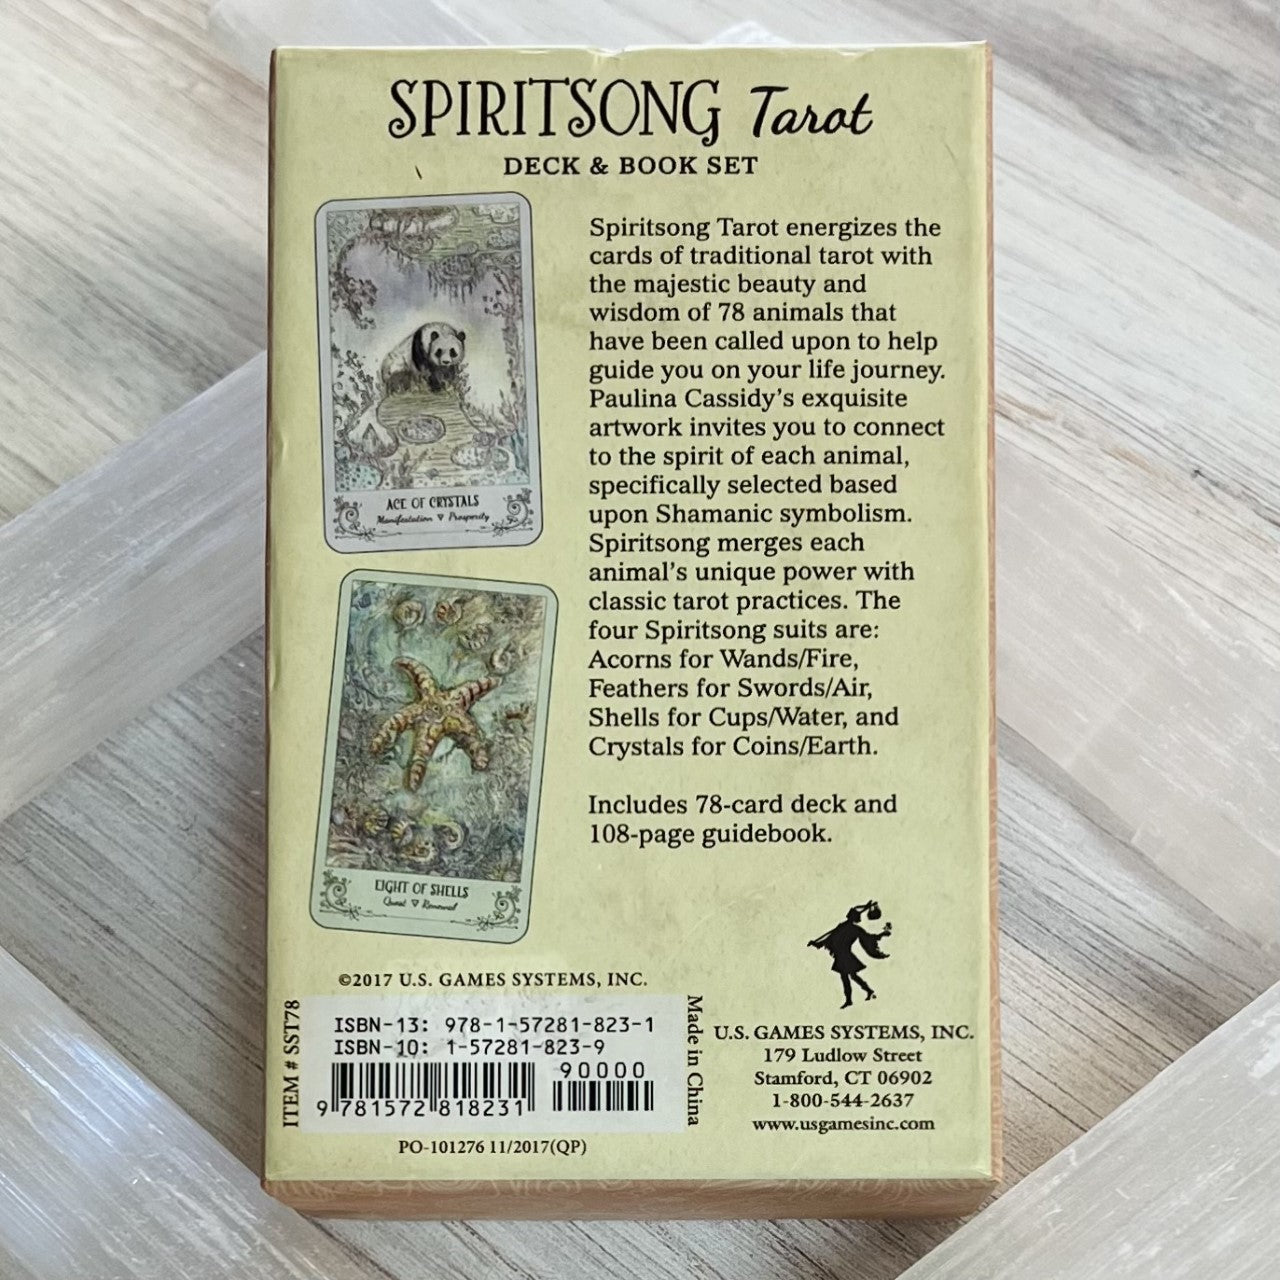 Spiritsong Tarot by Paulina Cassidy